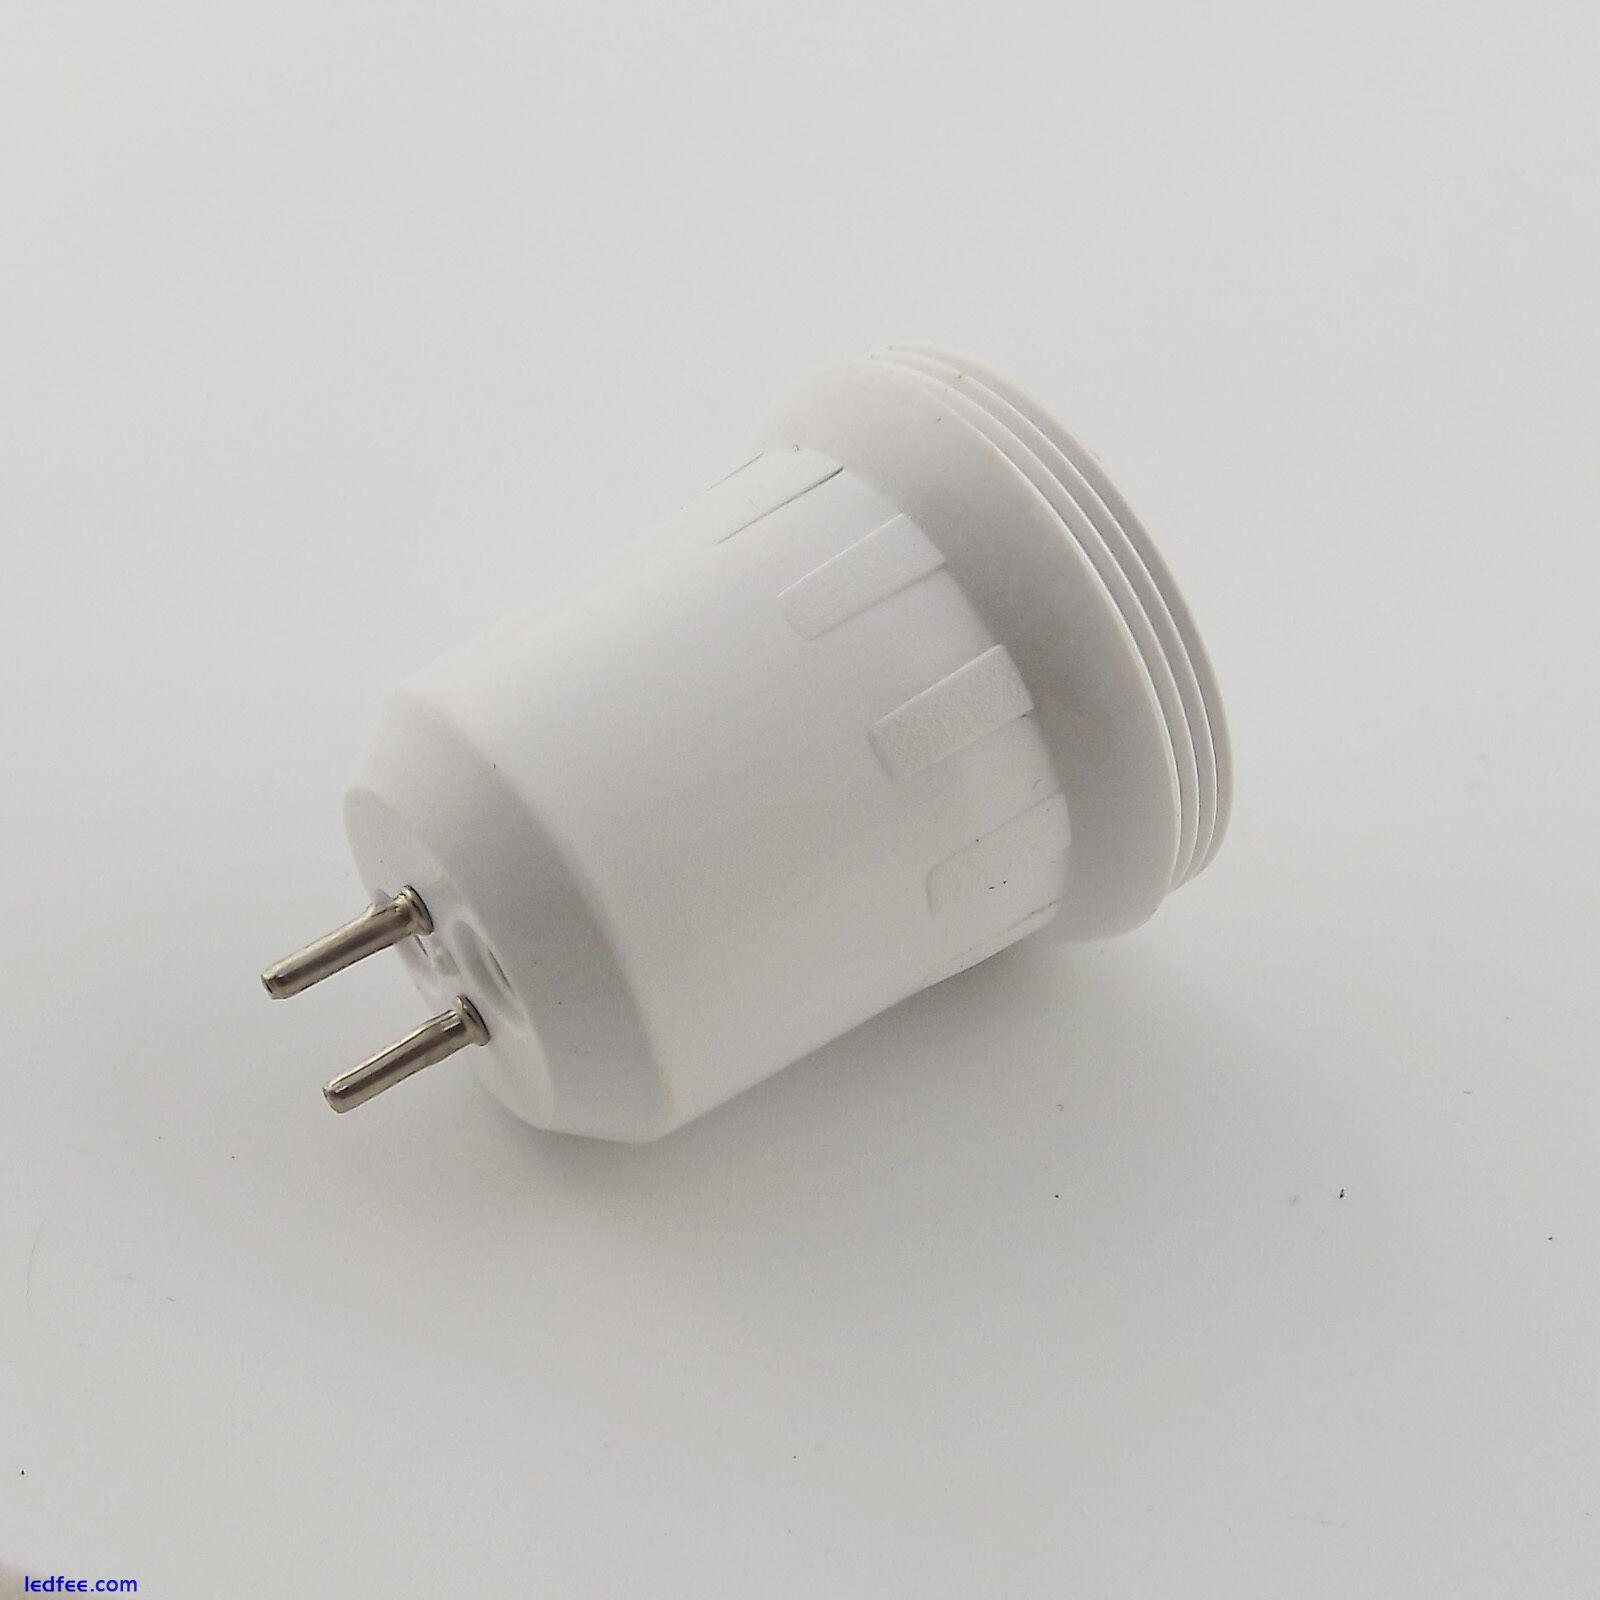 1x MR16 Lamp Socket to E17 Screw Thread LED Bulb Base Converter Adapter Holder 3 